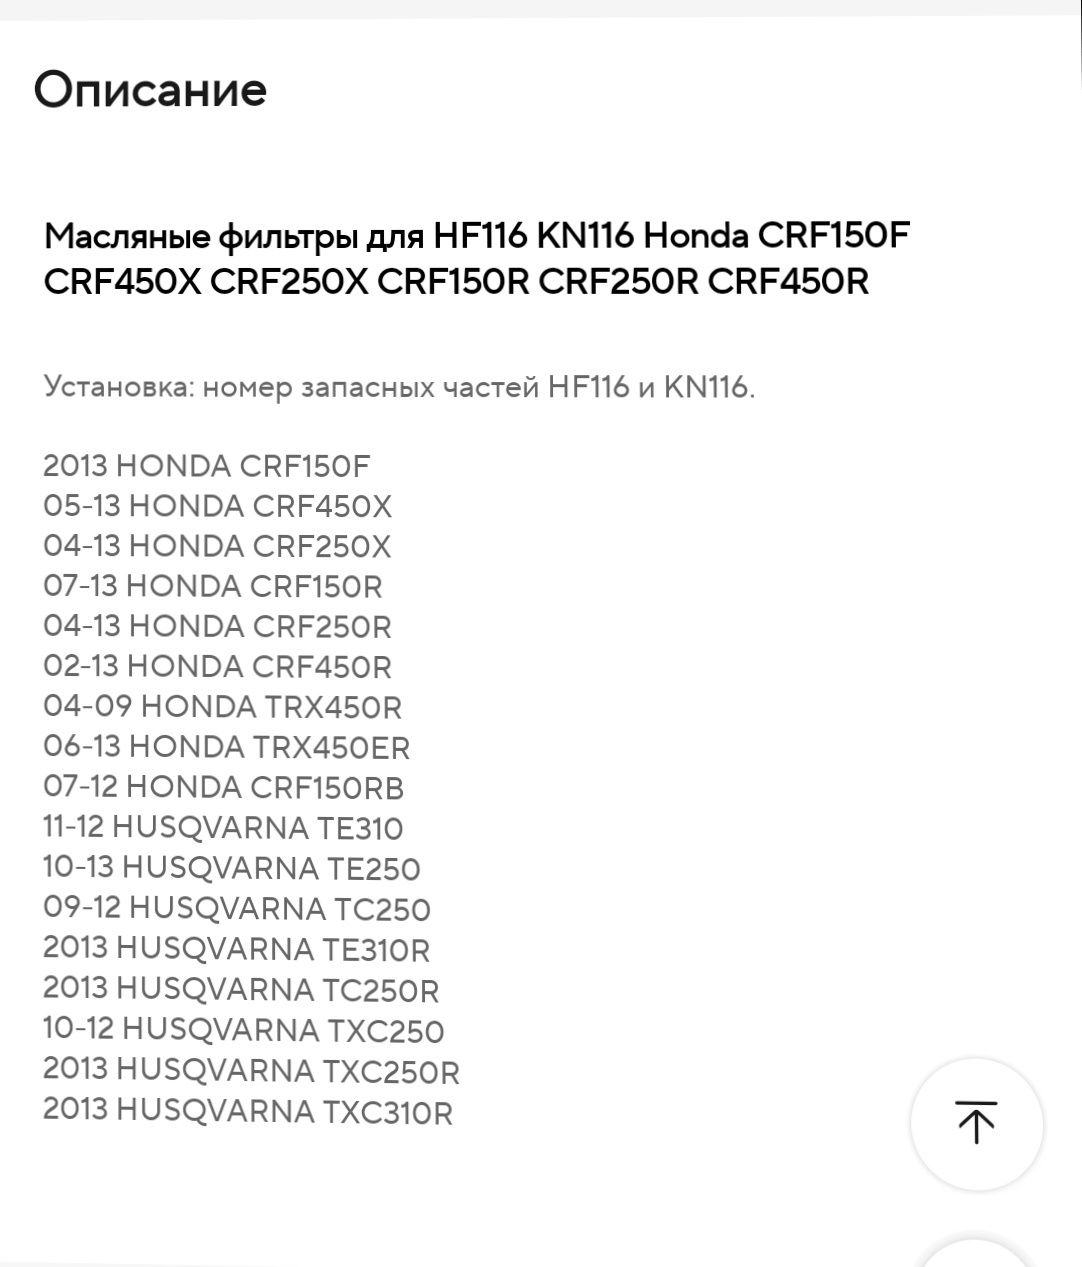 Масляные фильтры для HF116 KN116 Honda